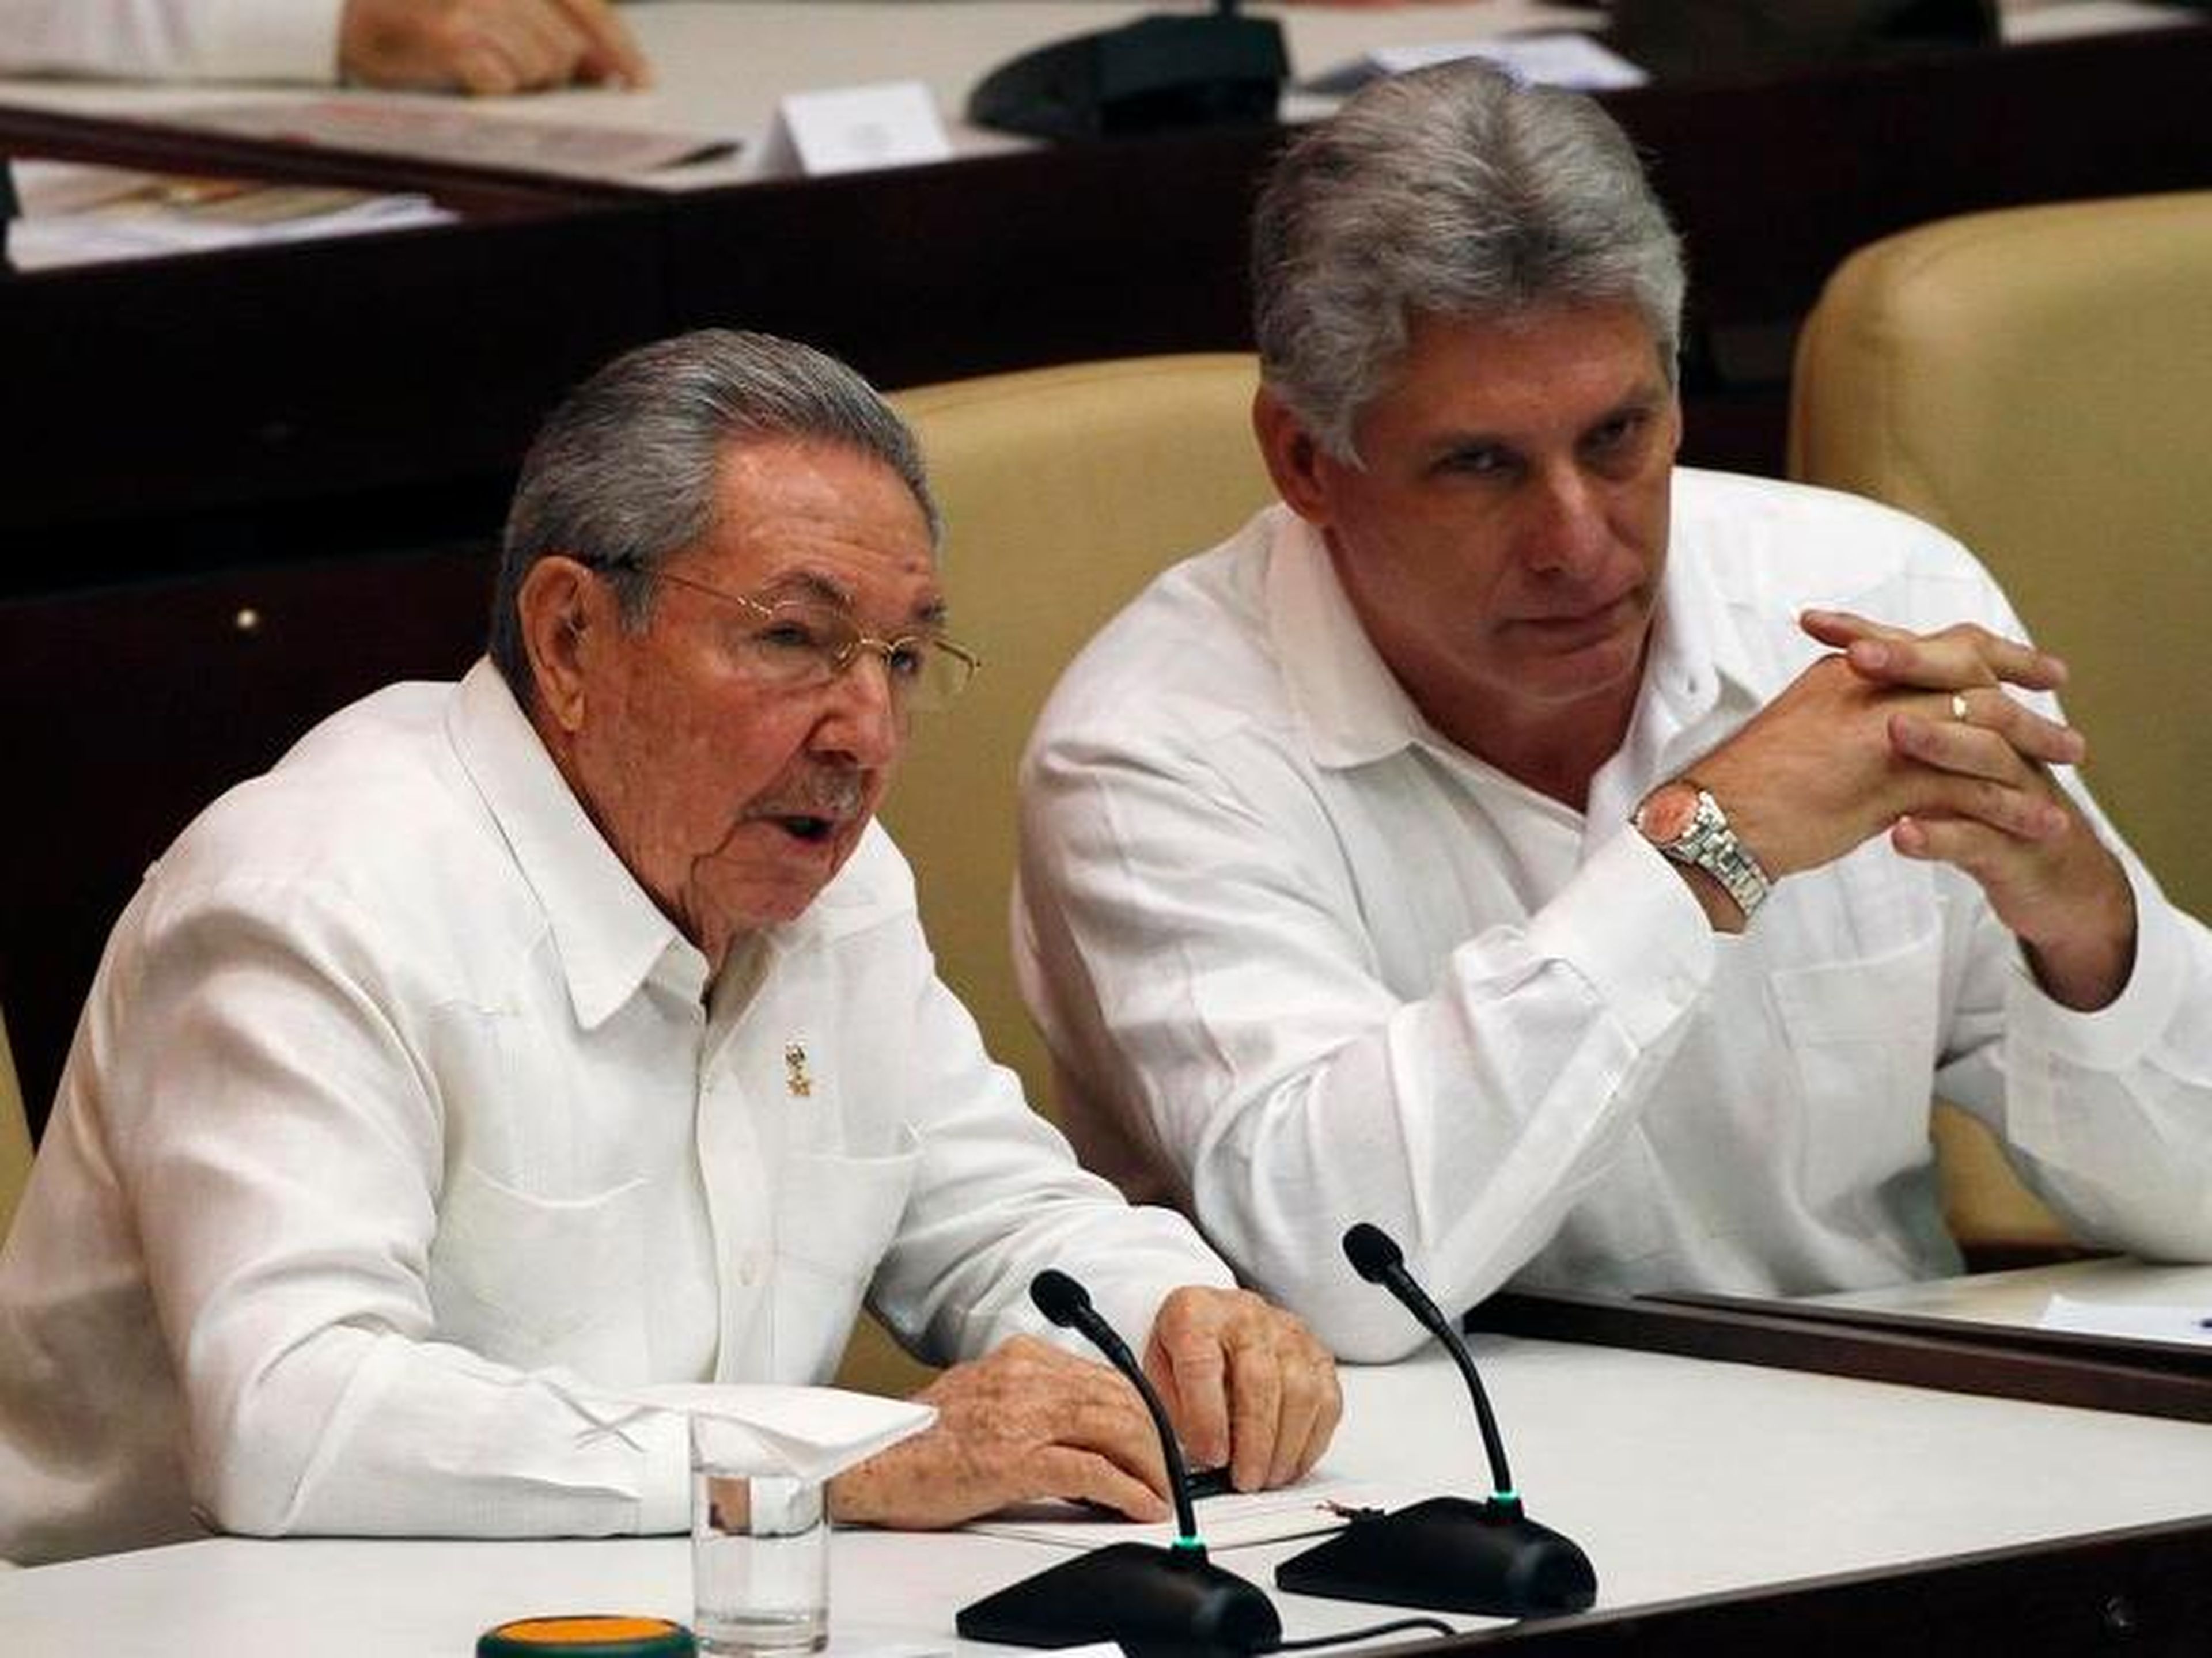 El presidente cubano Castro habla con su primer vicepresidente Díaz Canel durante una sesión de la Asamblea Nacional en La Habana